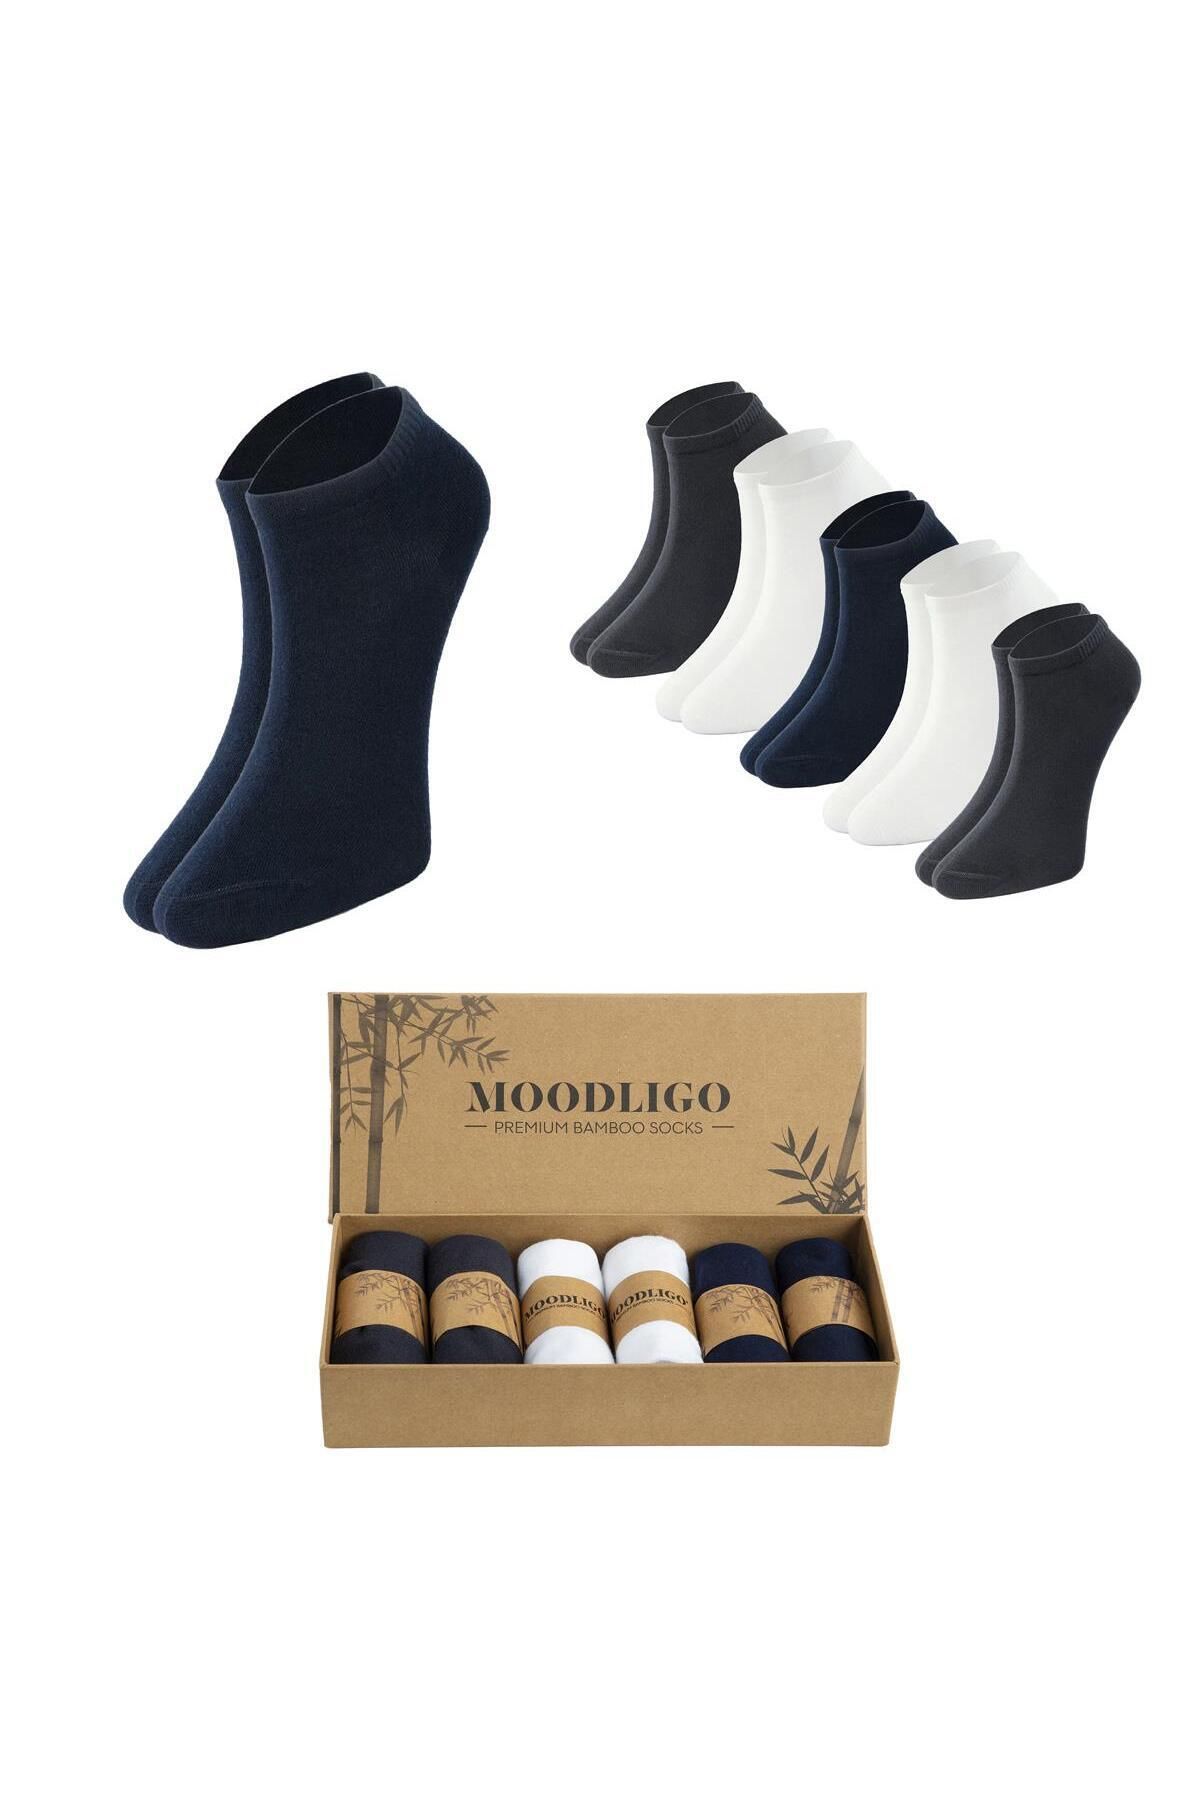 Moodligo Erkek 6'lı Premium Bambu Patik Çorap - 2 Füme 2 Beyaz 2 Lacivert - Kutulu